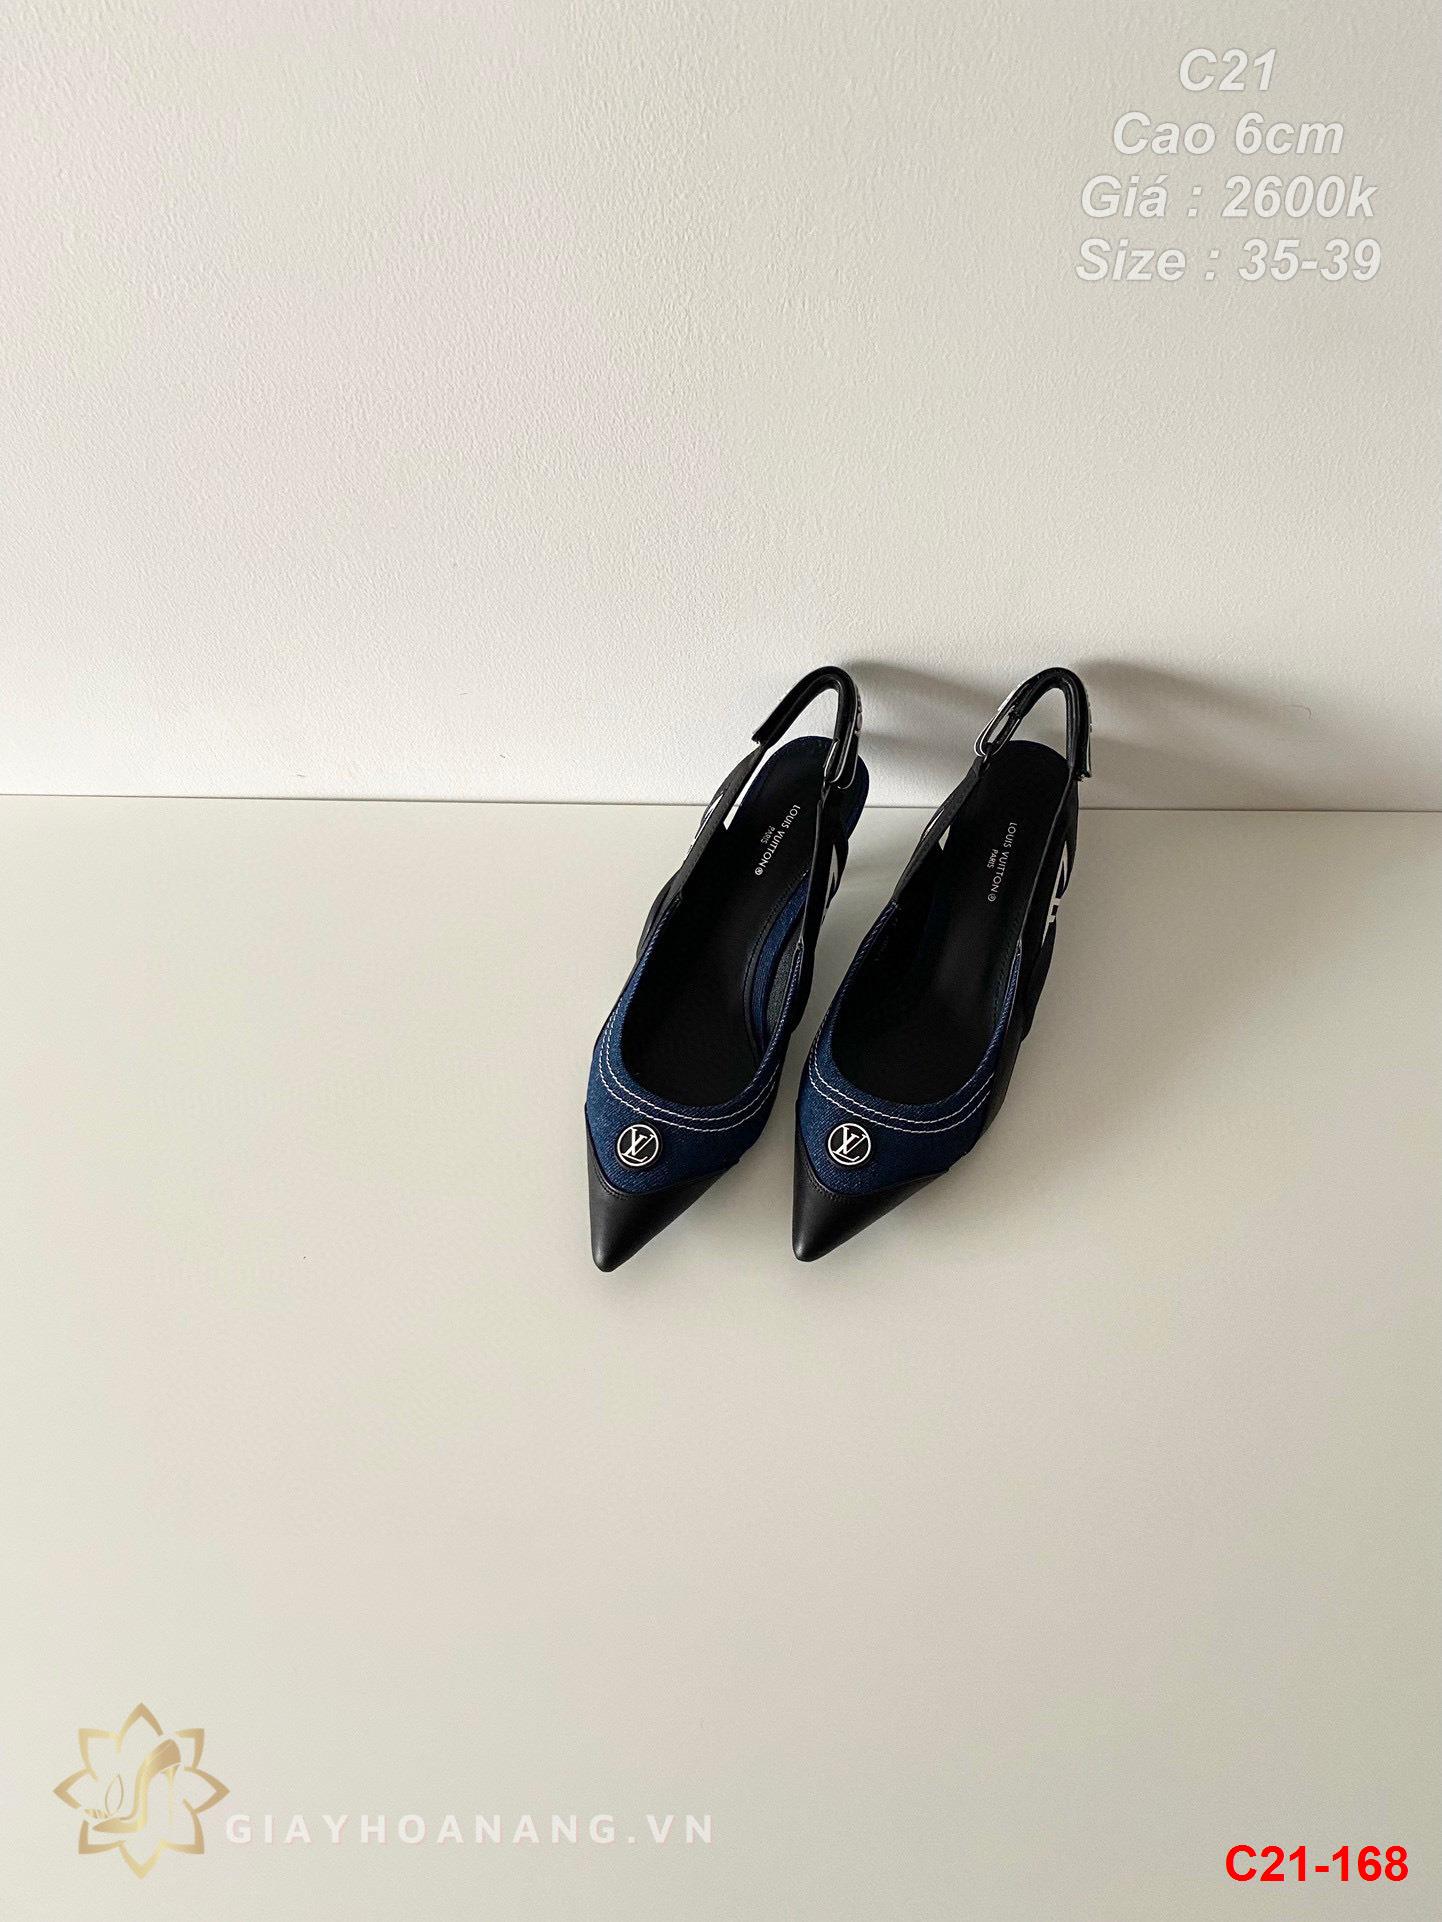 C21-168 Louis Vuitton sandal cao 6cm siêu cấp